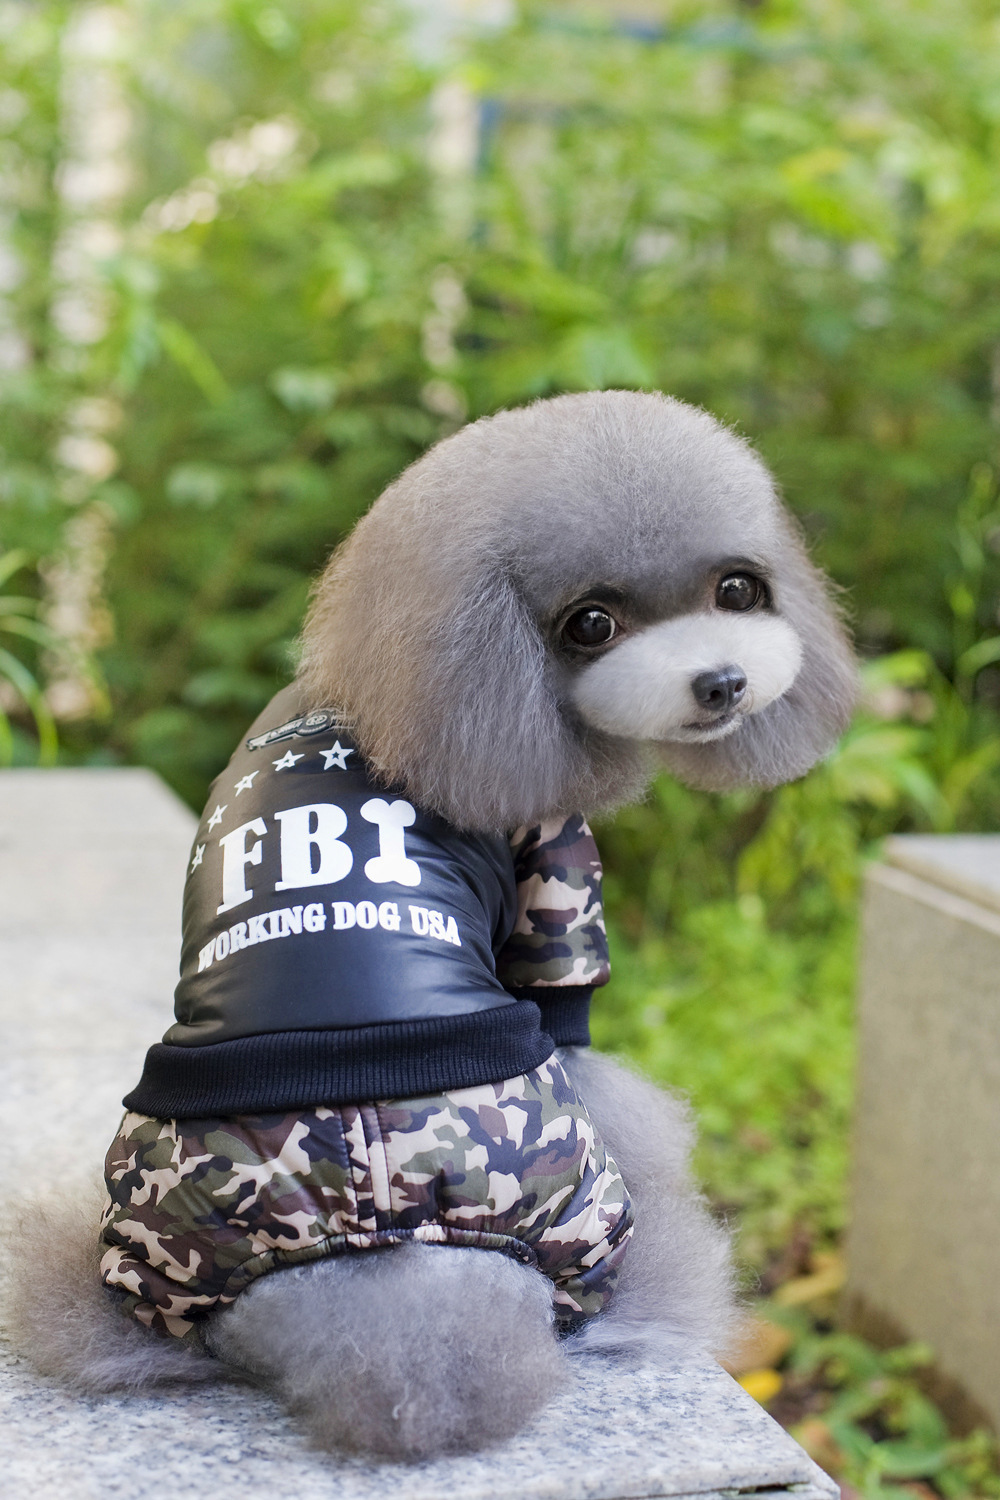 厂家直销宠物狗衣服宠物冬装泰迪FBI迷彩四腿衣加厚加绒棉衣批发